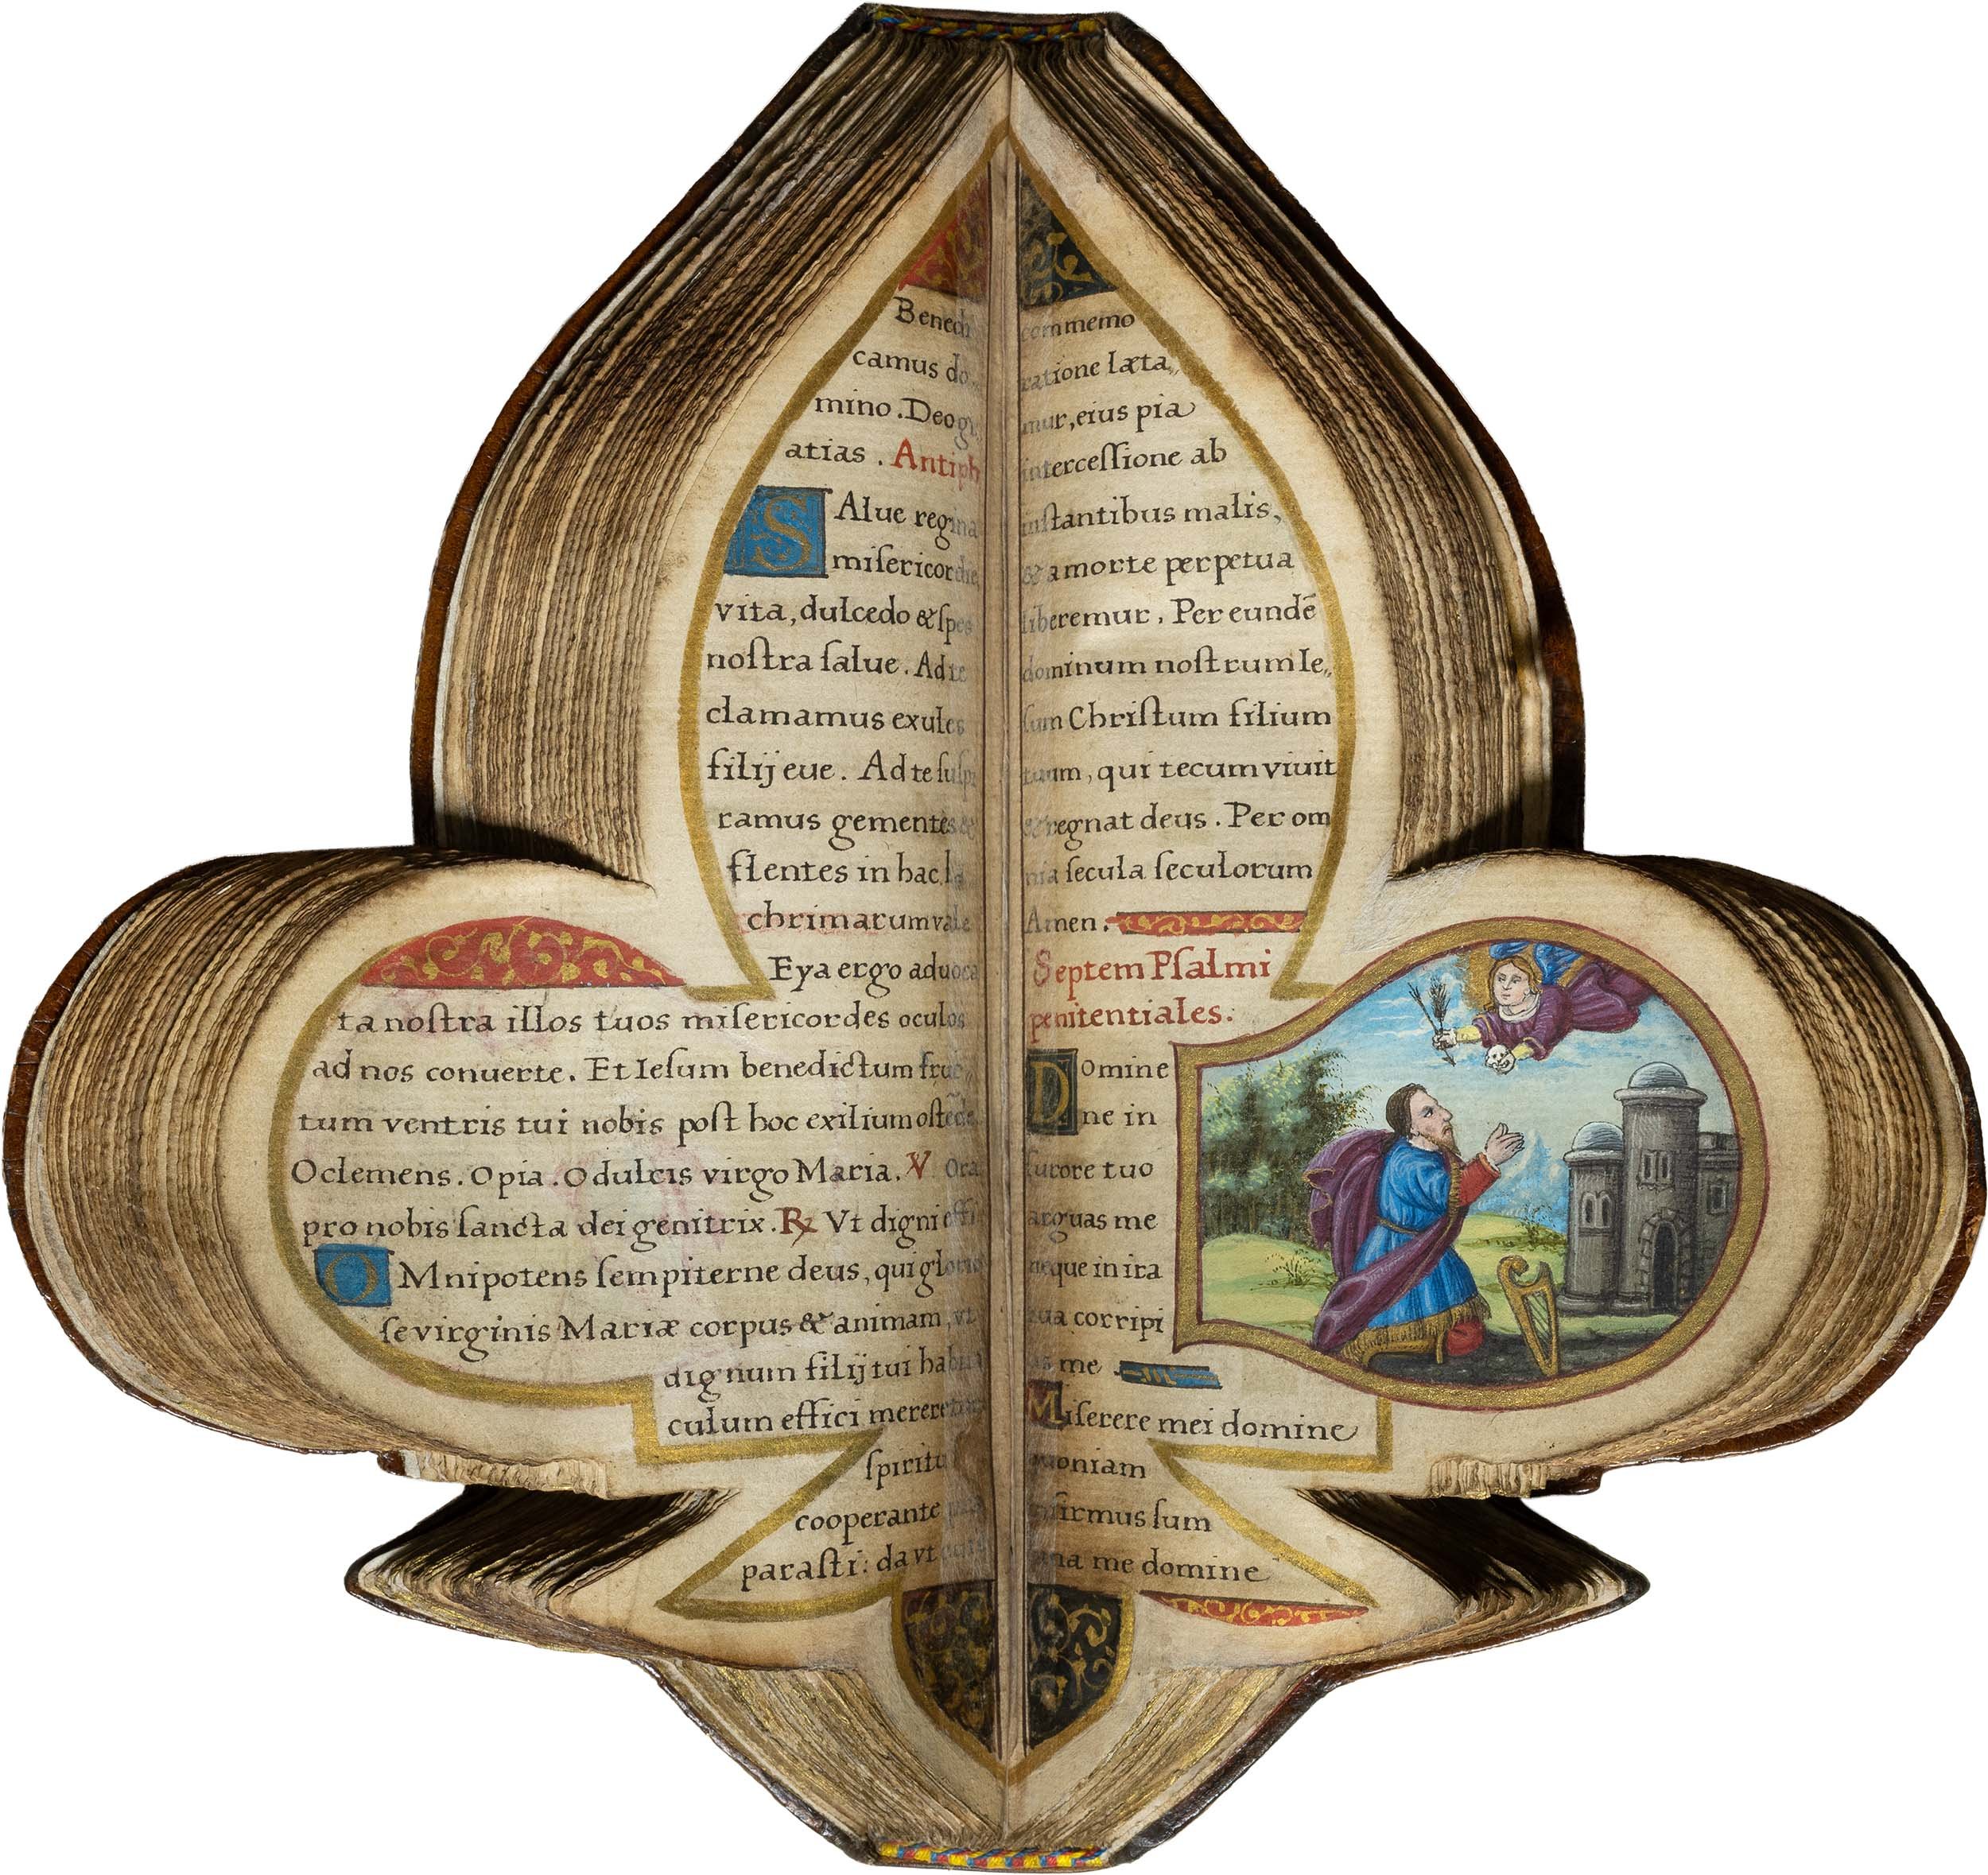 Book-of-hours-bourbon-lily-shape-manuscript-napoleon-beauharnais-combermere-paris-16th-century-22.jpg